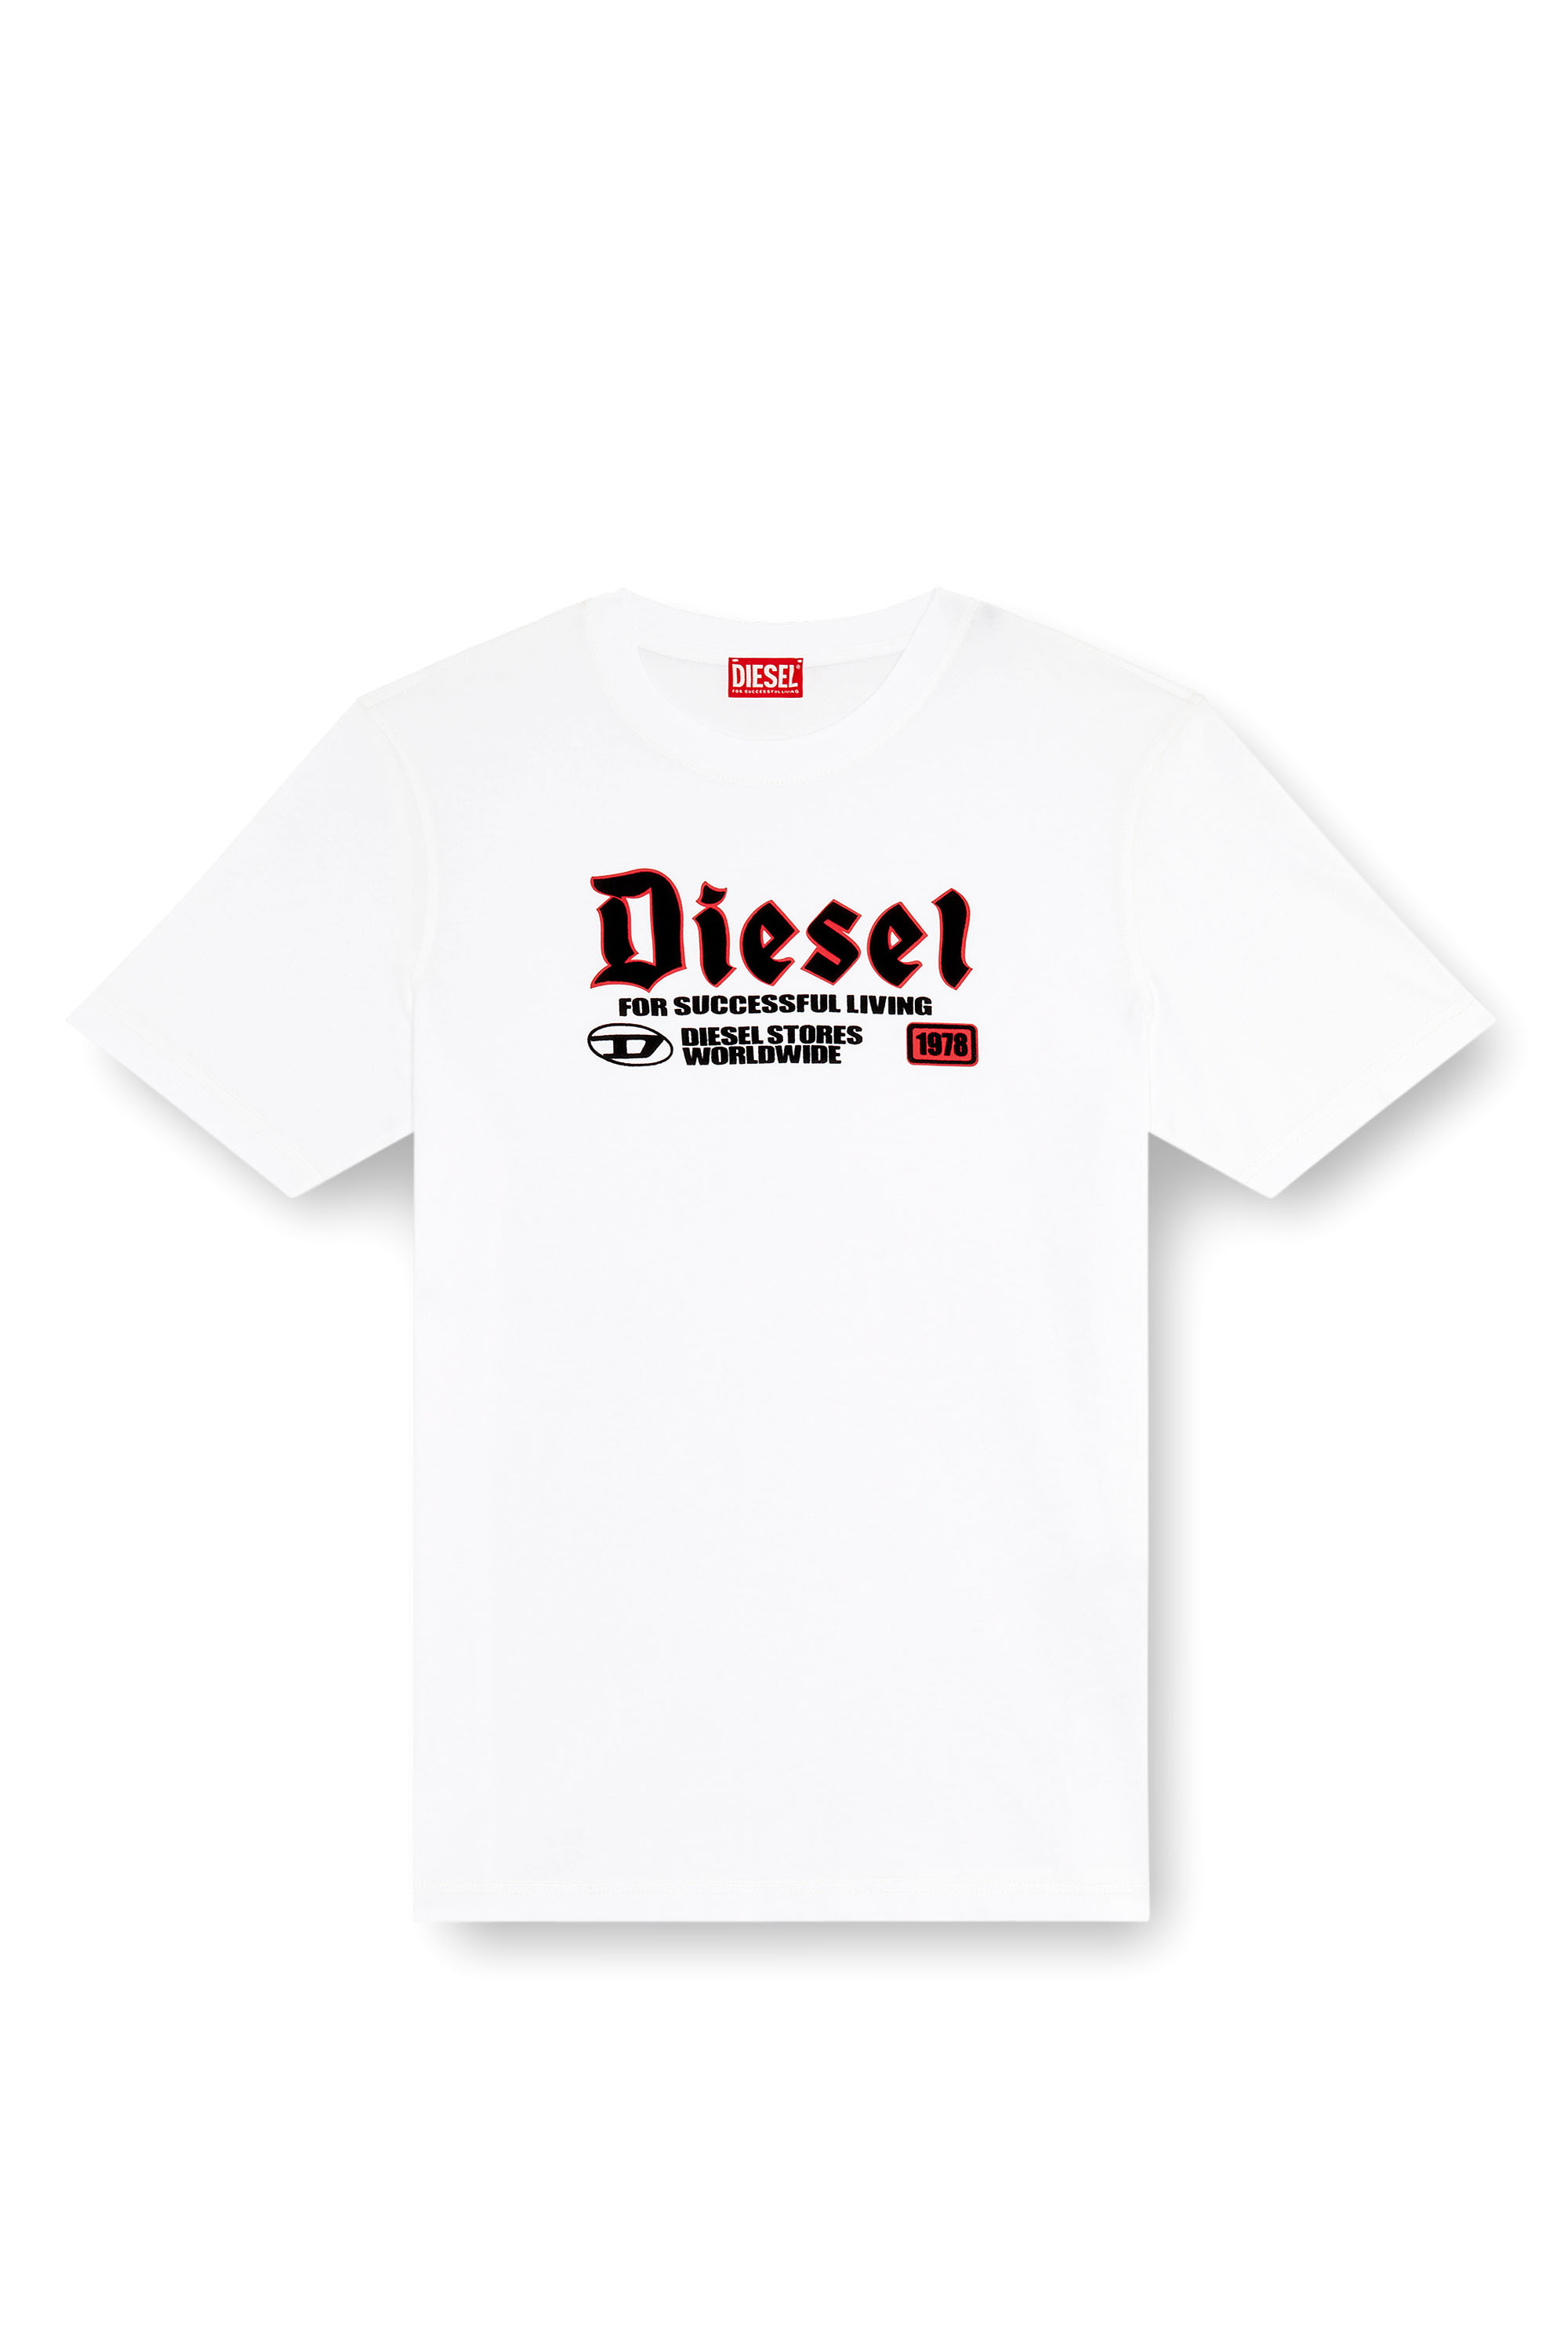 Diesel - T-ADJUST-K1, Homme T-shirt avec imprimé Diesel floqué in Blanc - Image 3